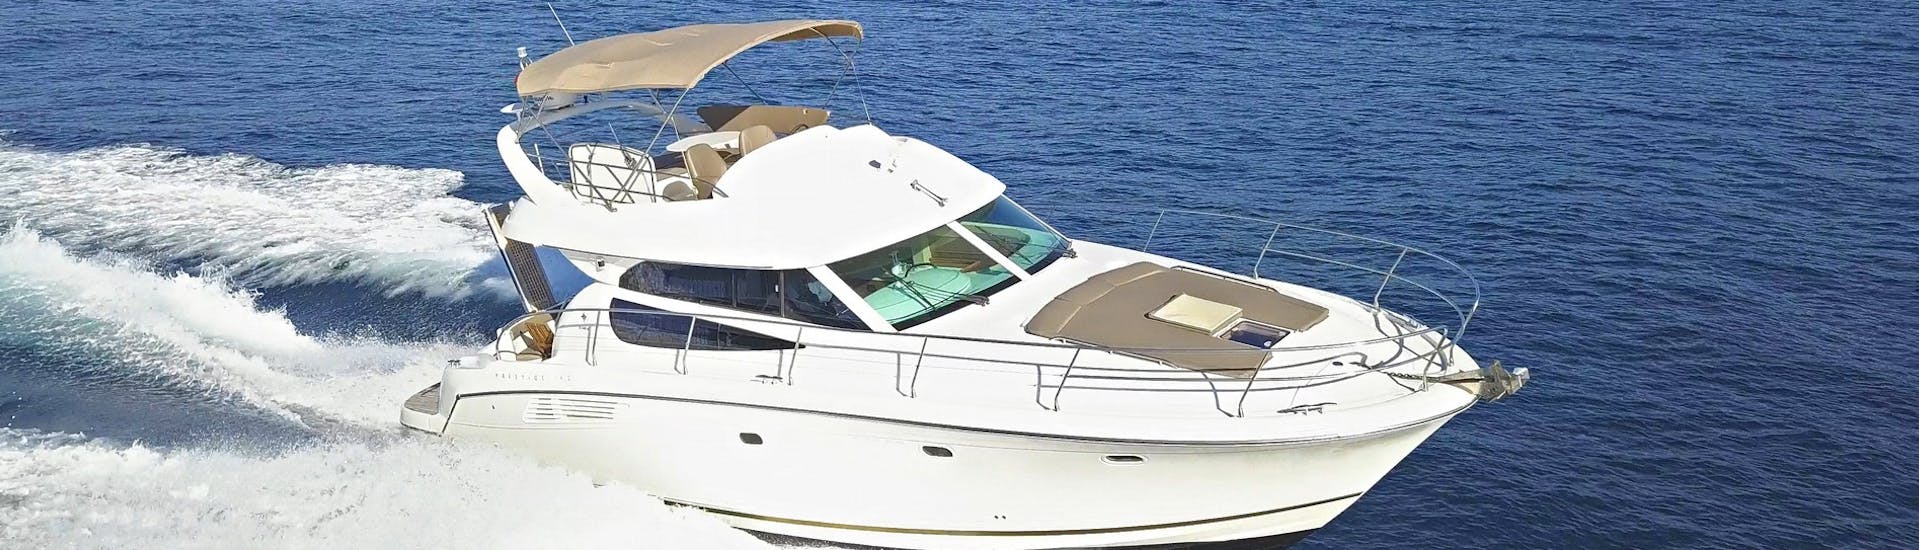 Gita privata di mezza giornata su uno yacht di lusso alle isole Elafiti.